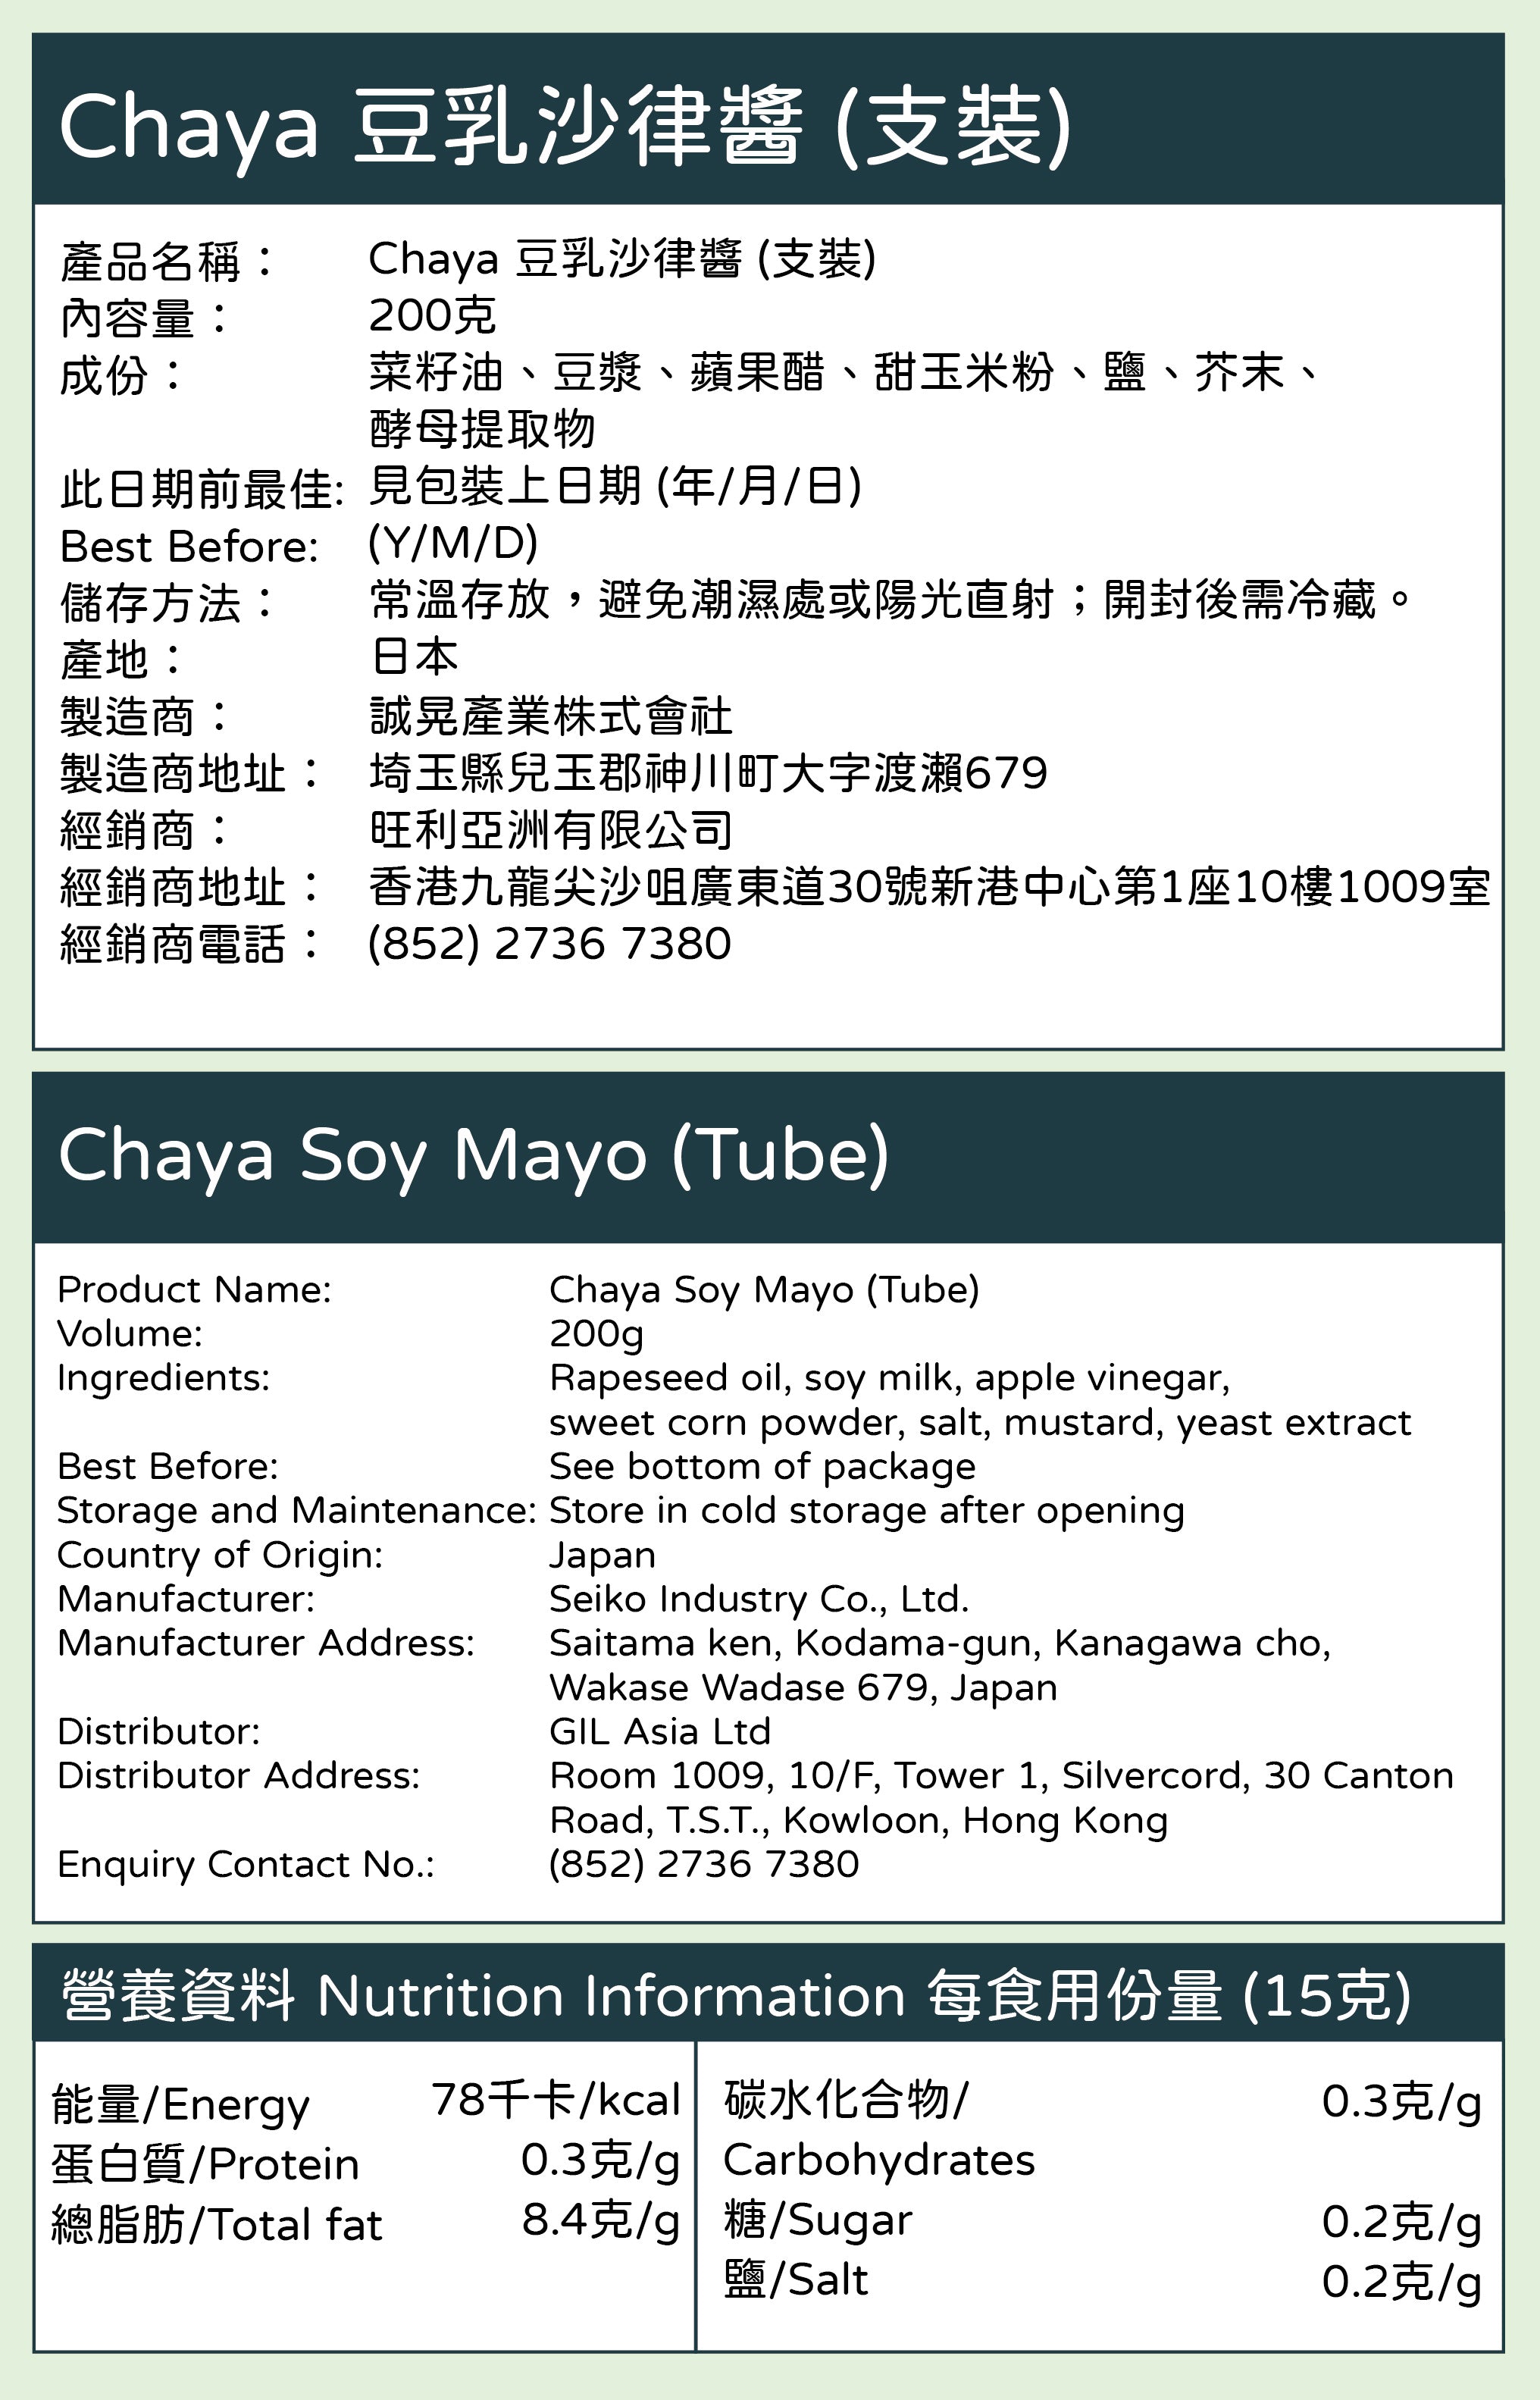 Chaya Soy Mayo (Tube) [200g]